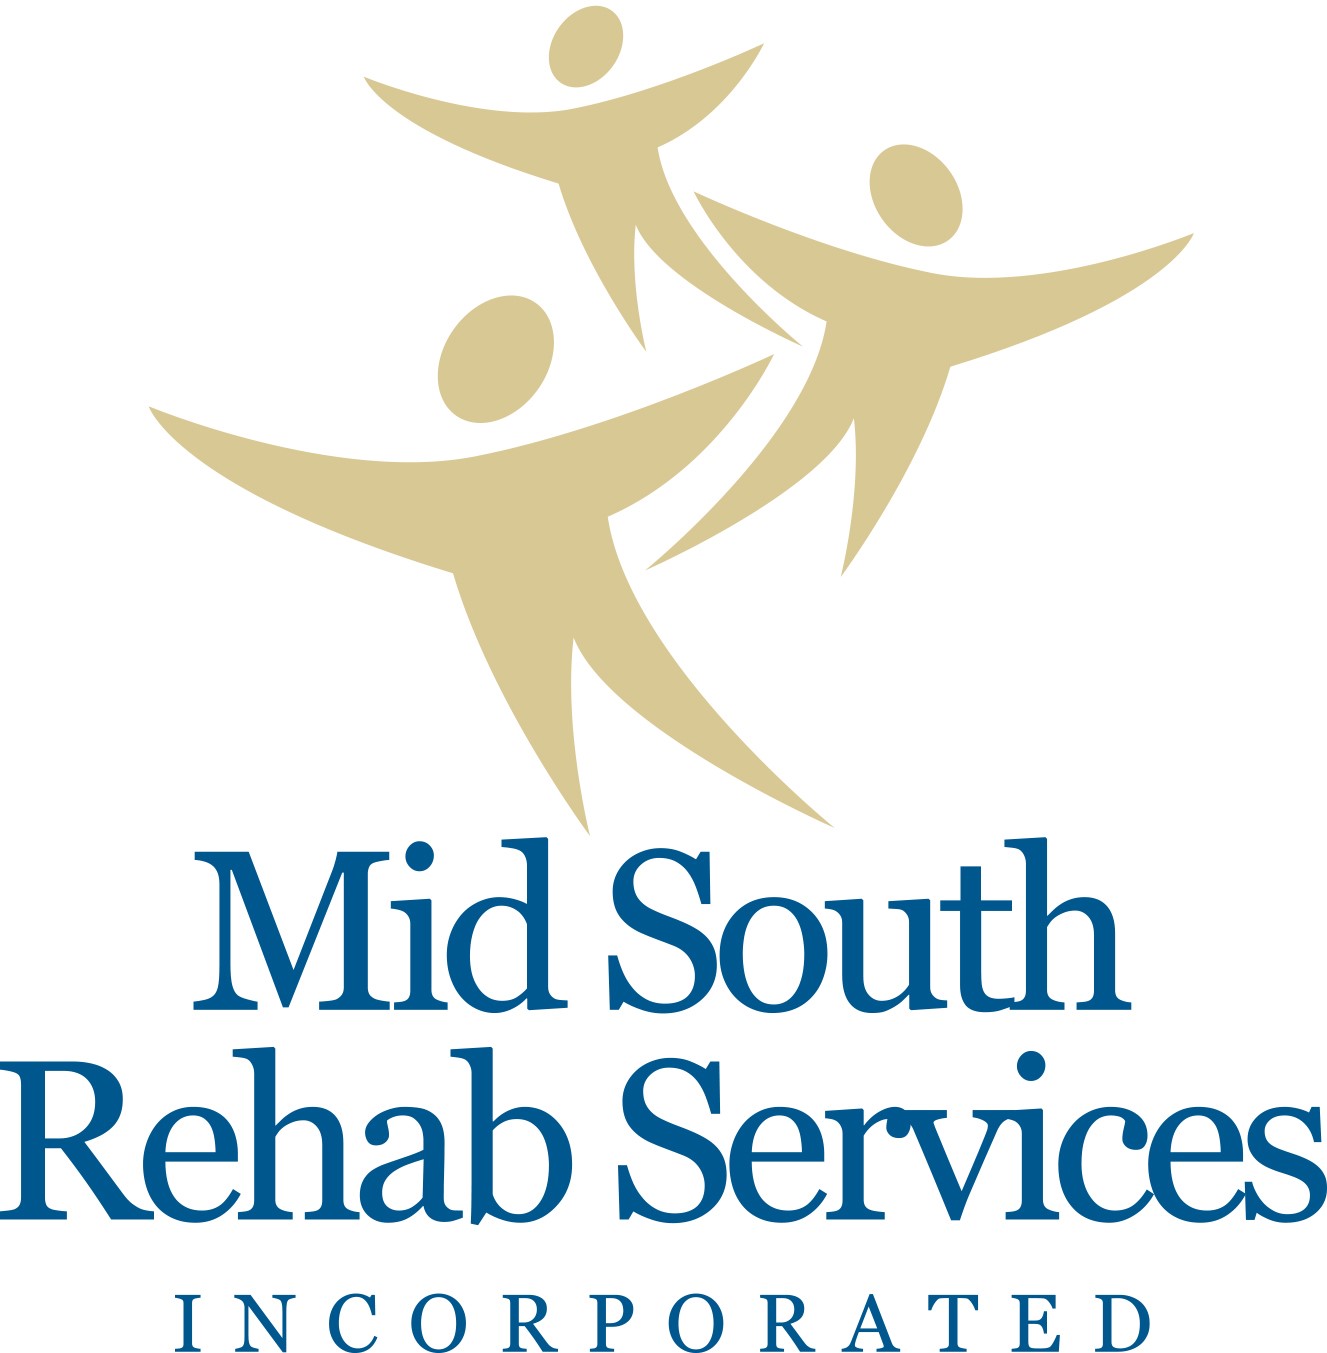 Servicios de rehabilitación de Mid South (Nivel 3)